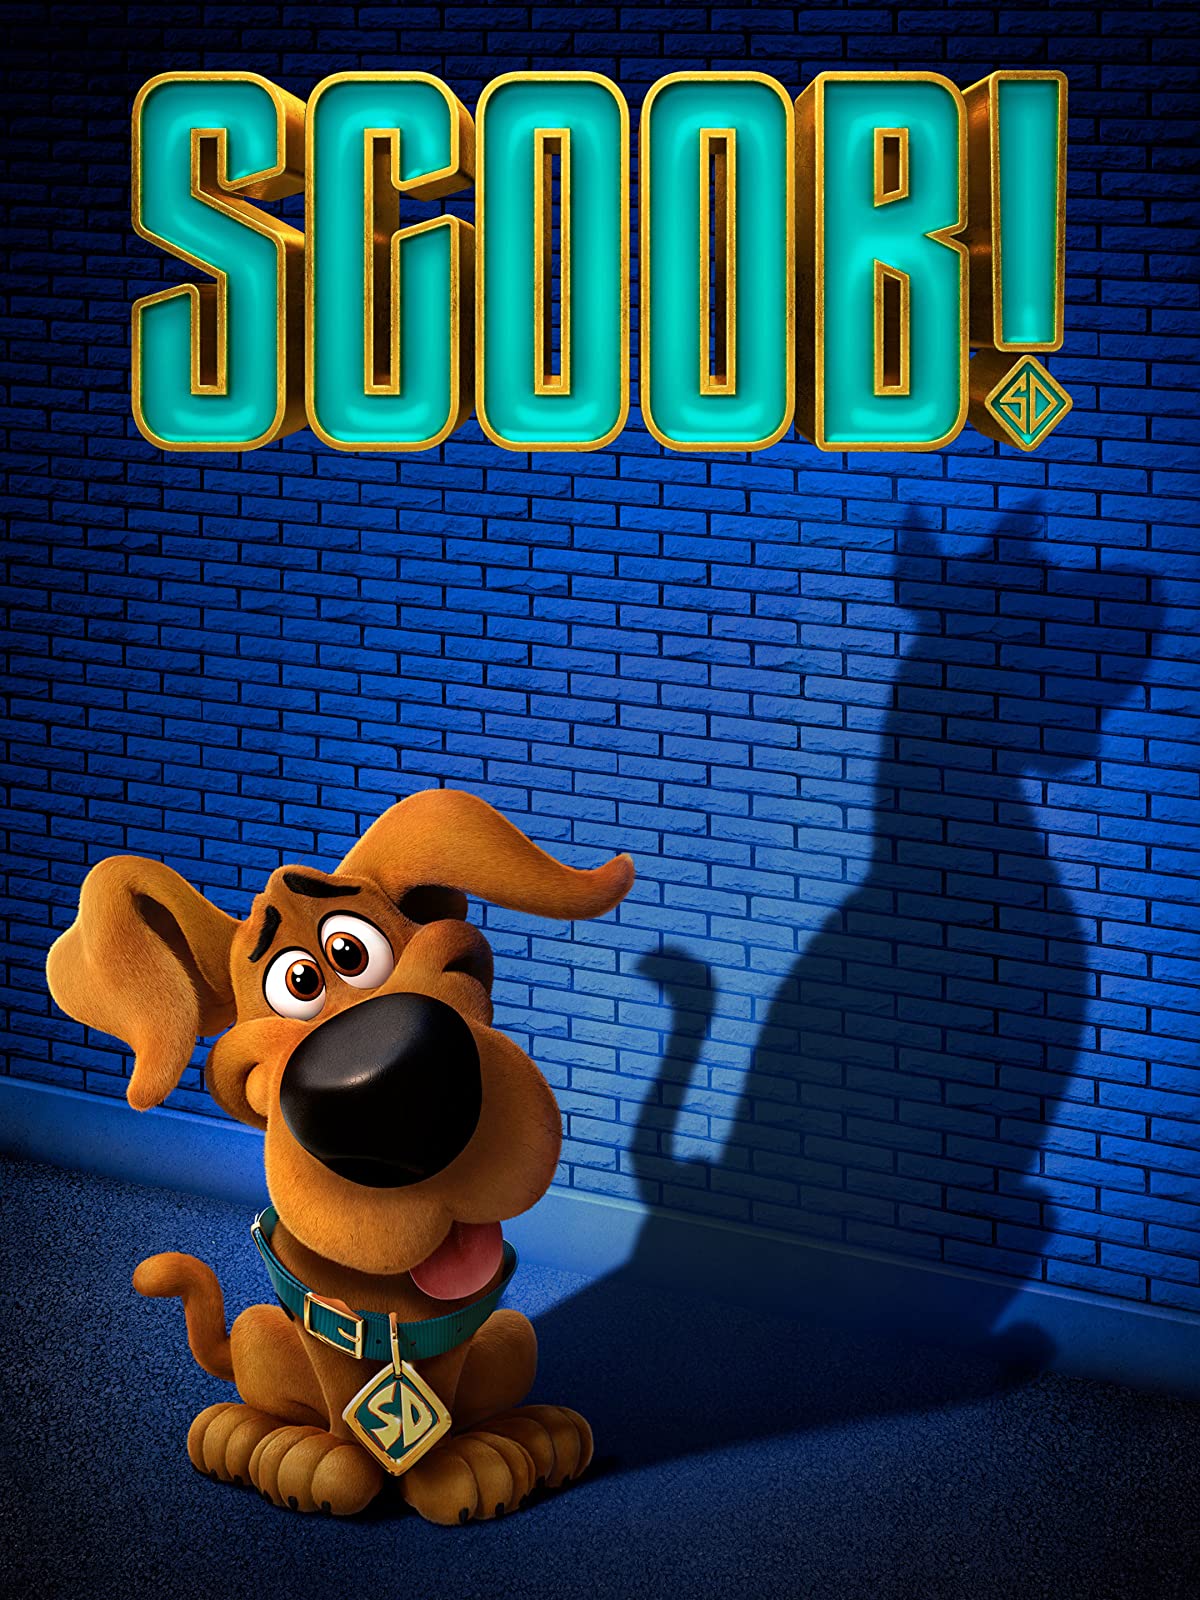 دانلود انیمیشن Scoob! 2020 اسکوب با دوبله فارسی